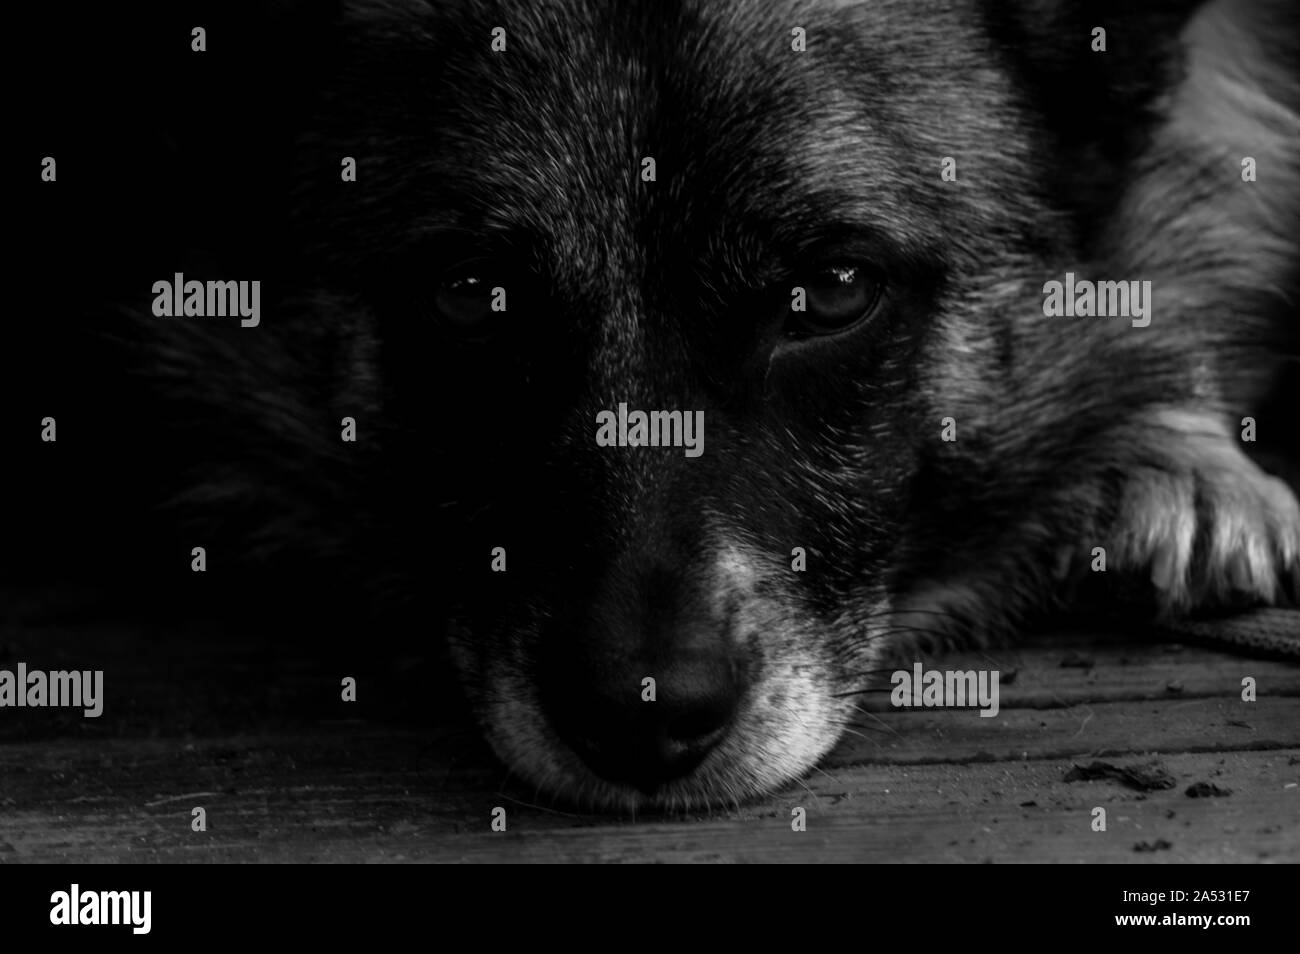 Nahaufnahme eines Hundes Gesicht, Nase und Augen liegen auf einem Holz- Oberfläche mit einer sehr ruhige und schöne Optik Stockfoto